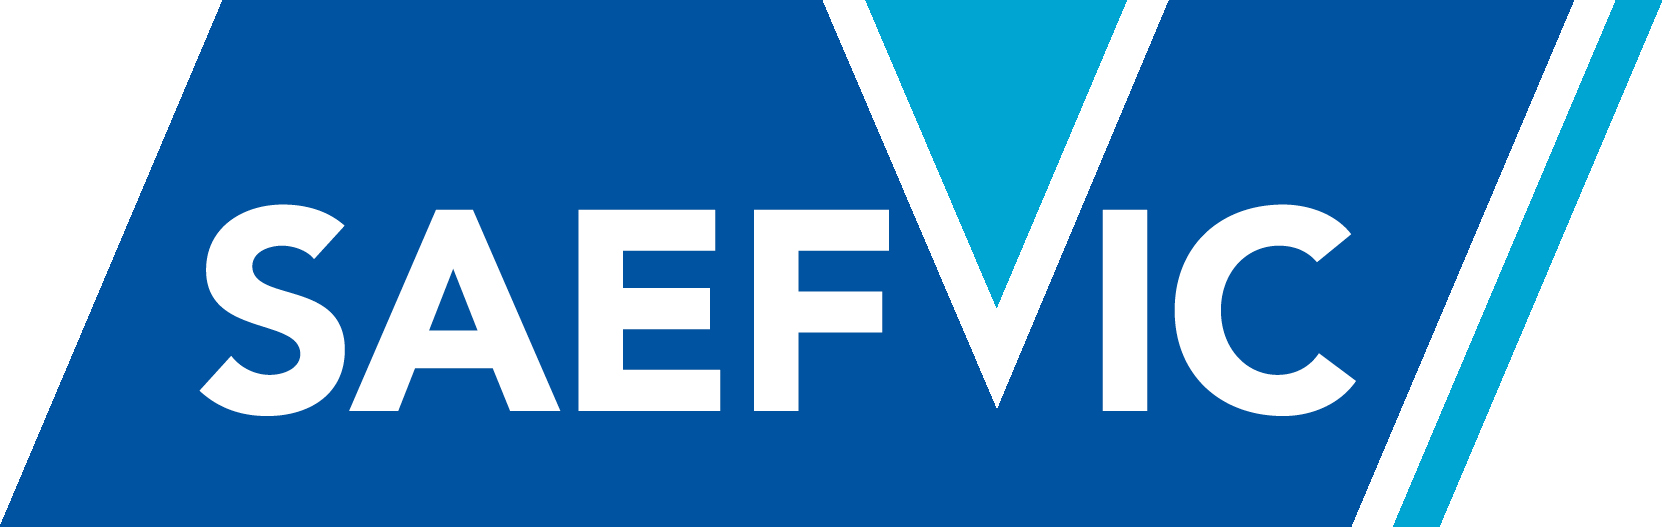 saefvic logo